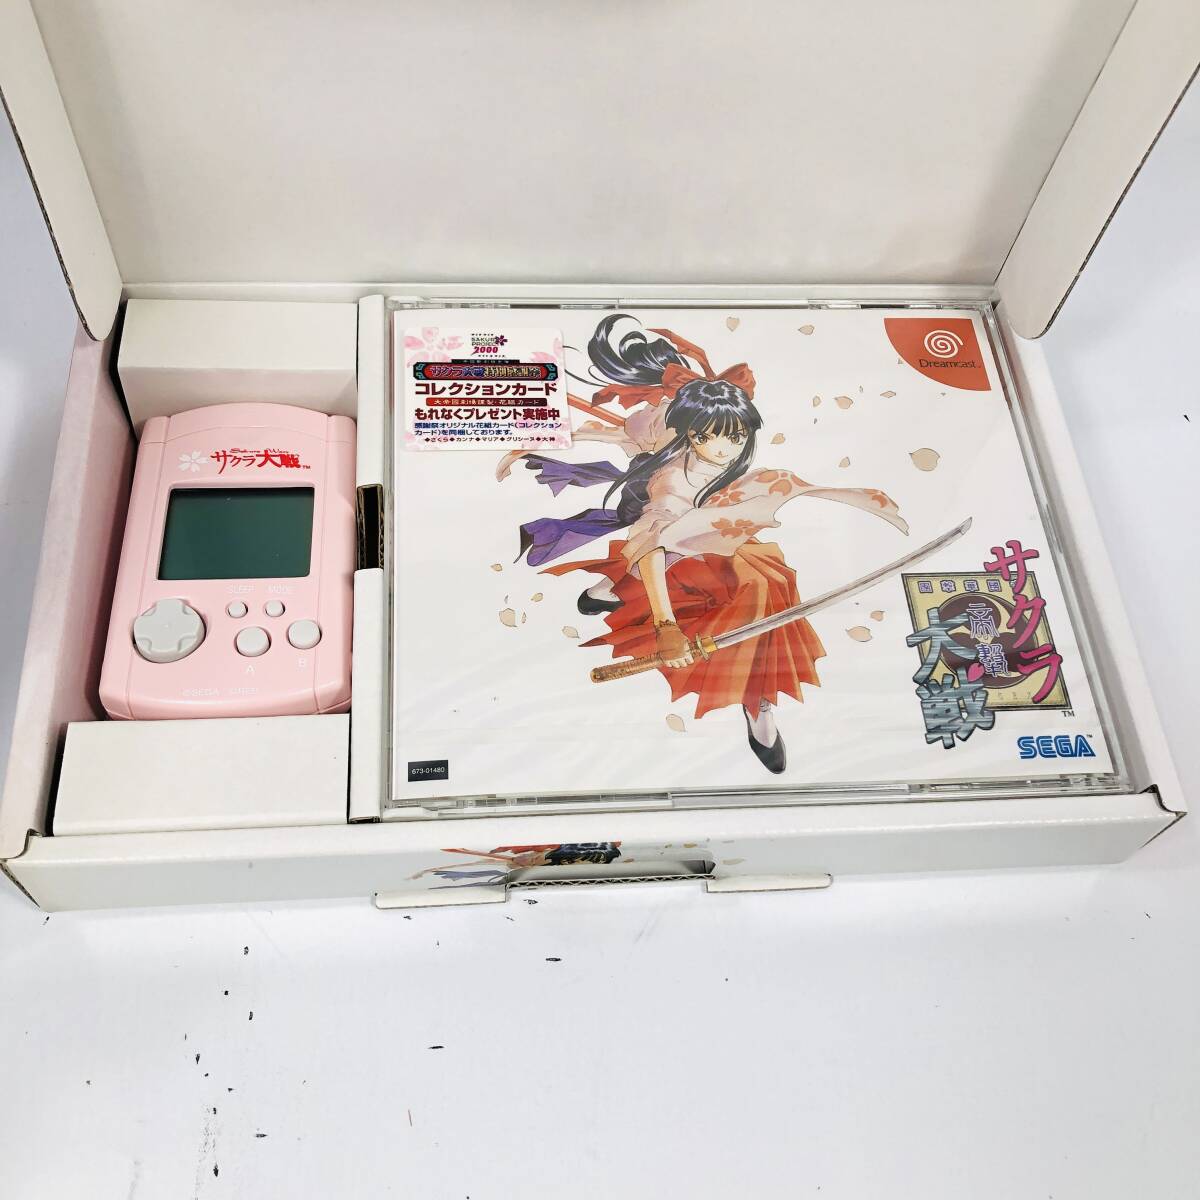 [付属品完備・美品・ソフト未開封/24-04-76] サクラ大戦 初回限定版 ゲームソフト ドリームキャスト Dreamcast の画像4